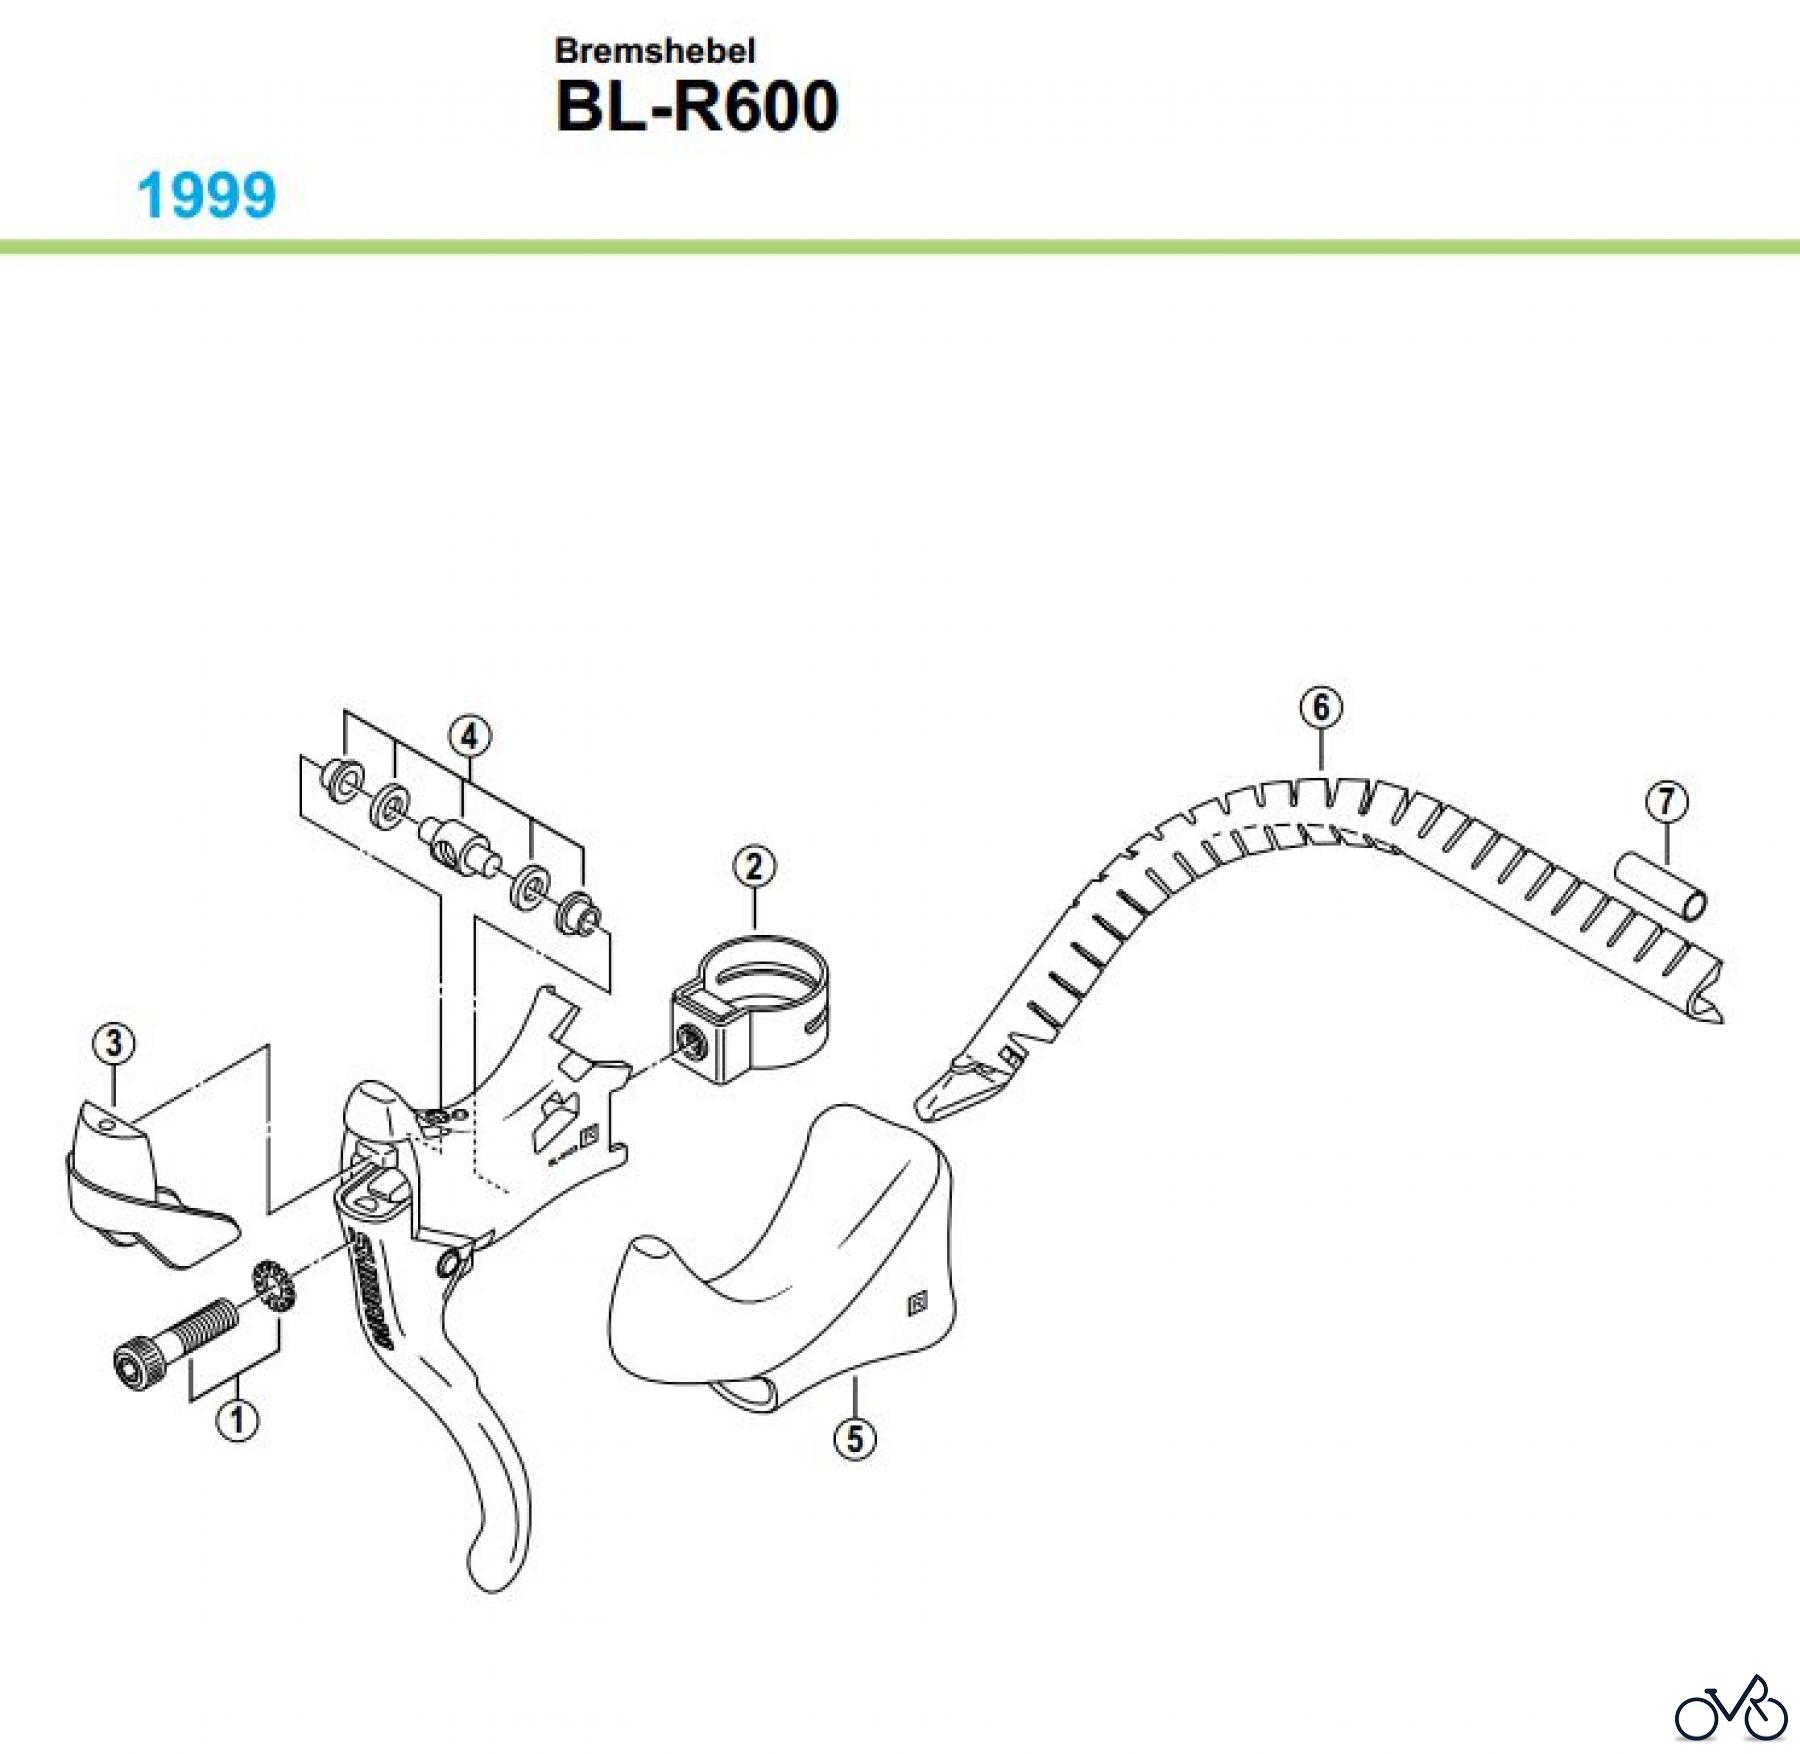  Shimano BL Brake Lever - Bremshebel BL-R600